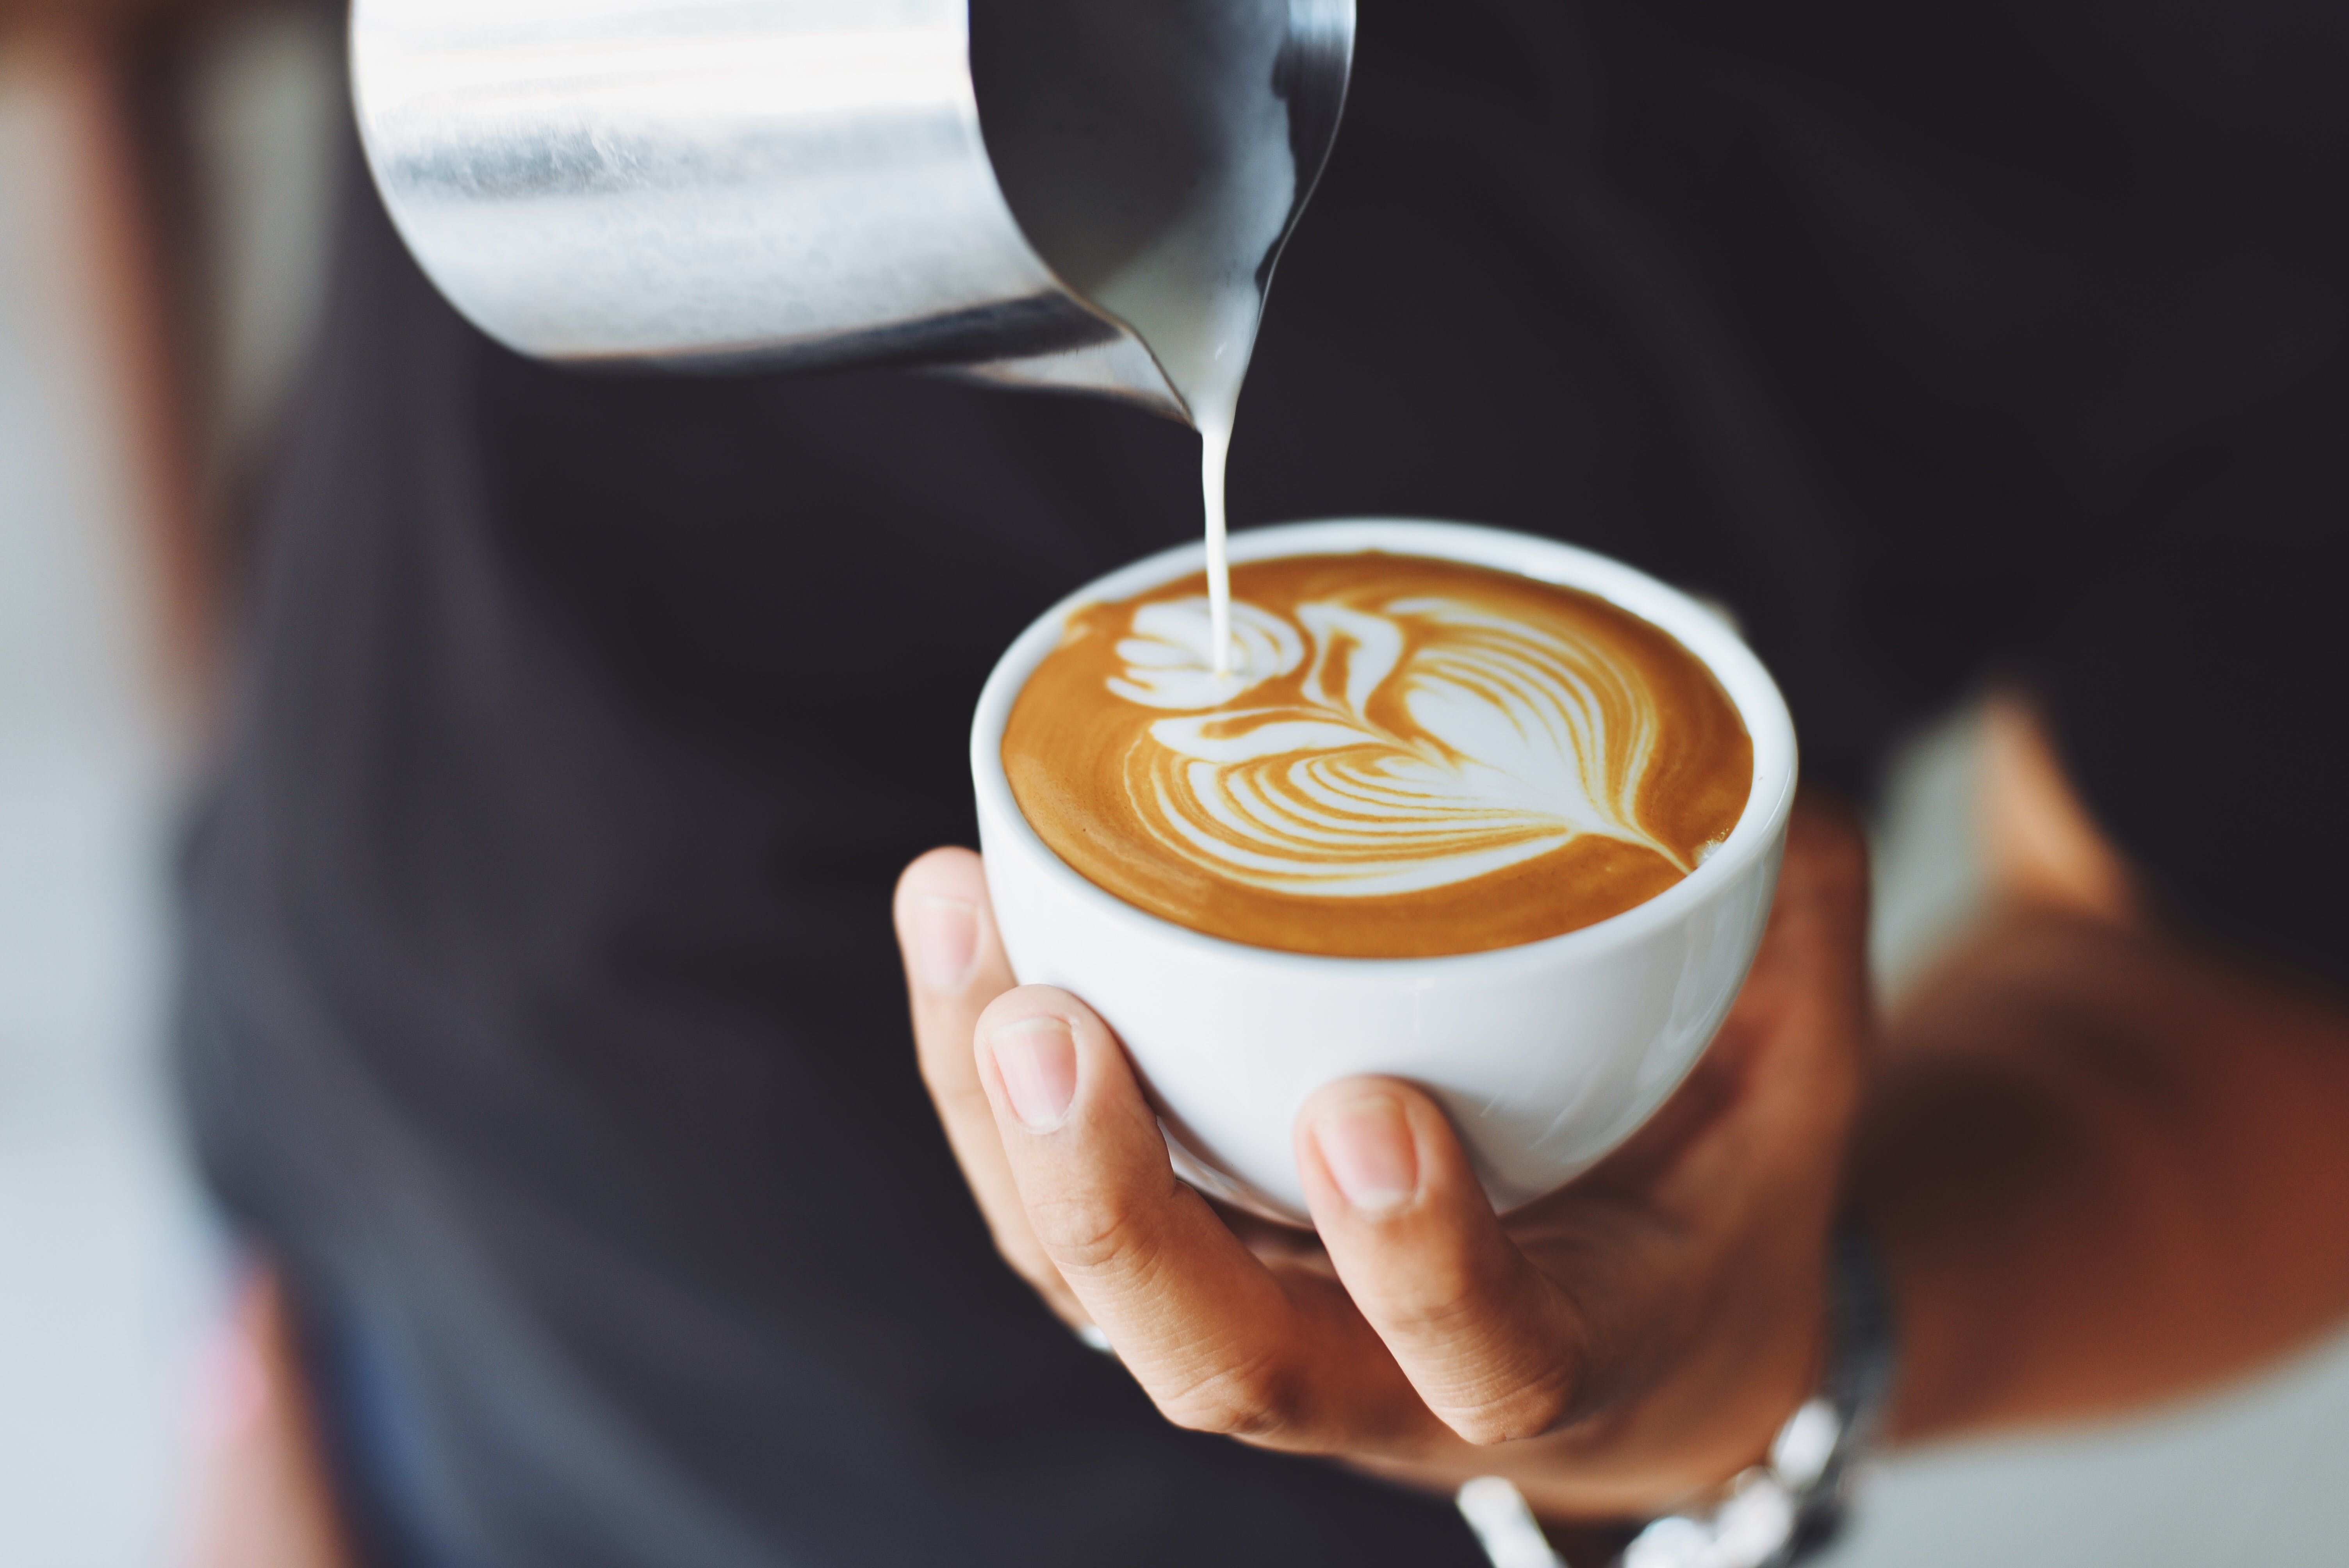 Una persona con una taza de café con leche en la mano. | Fuente: Pexels